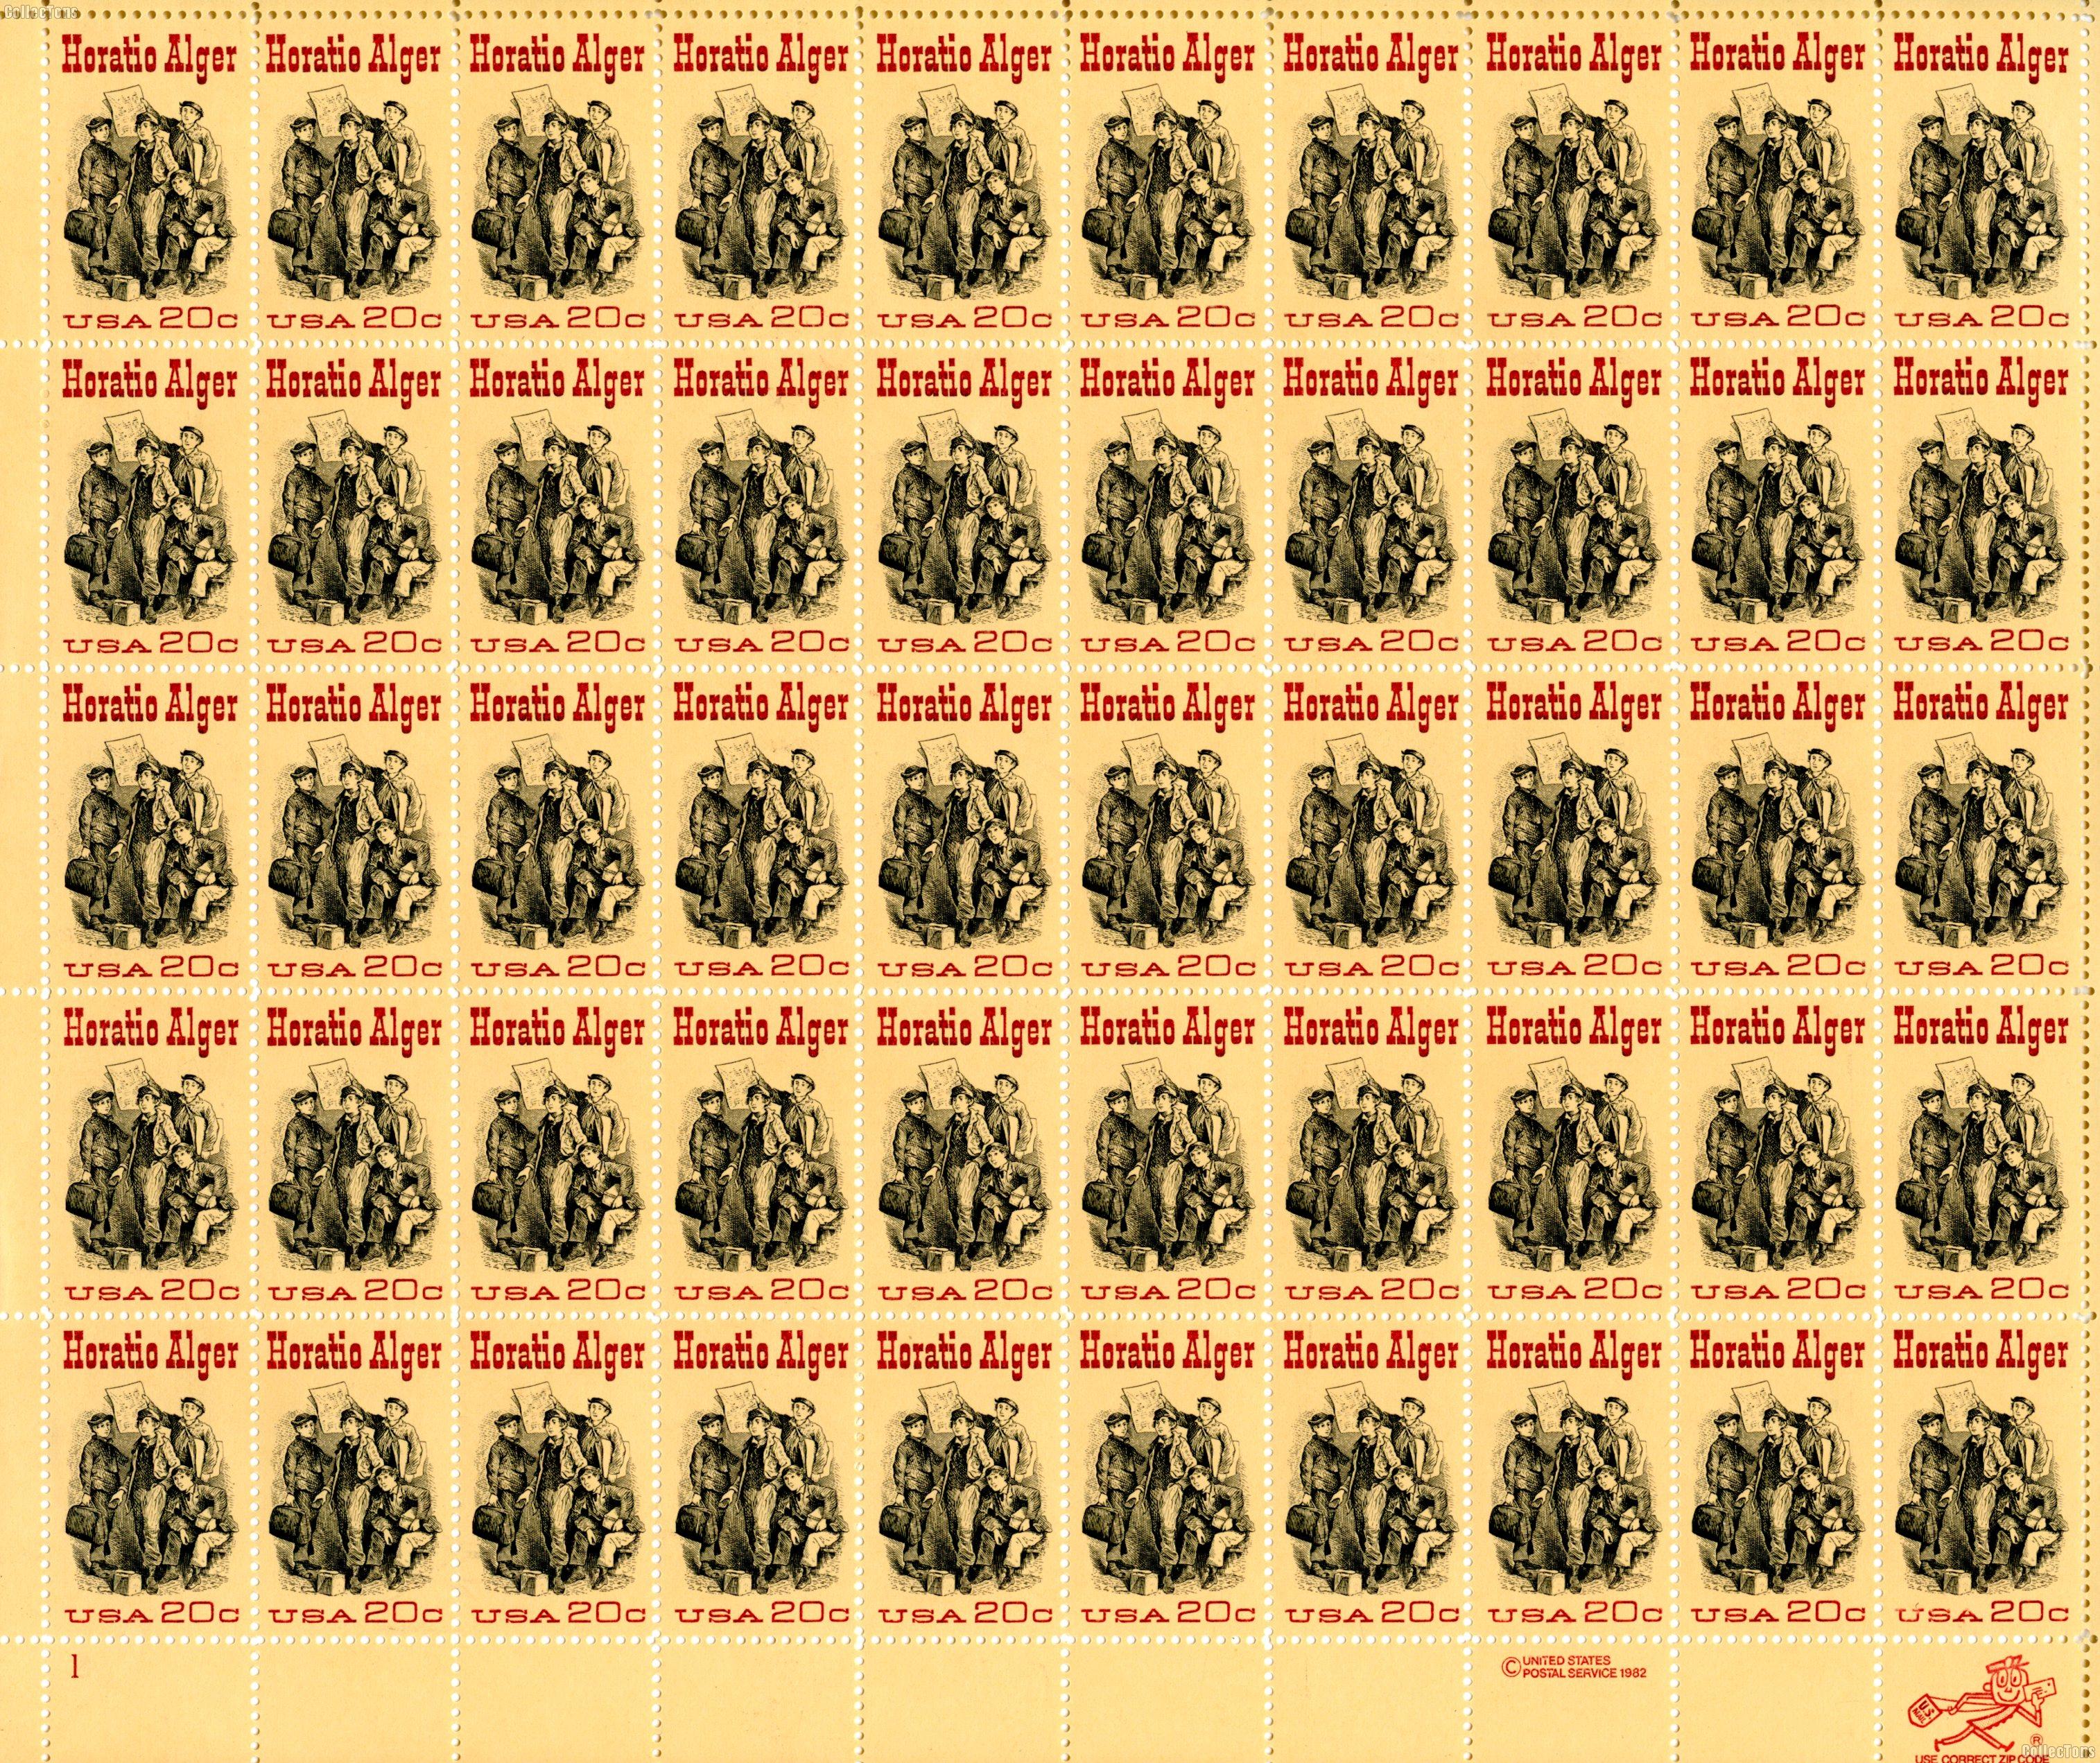 1982 Horatio Alger 20 Cent US Postage Stamp MNH Sheet of 50 Scott #2010